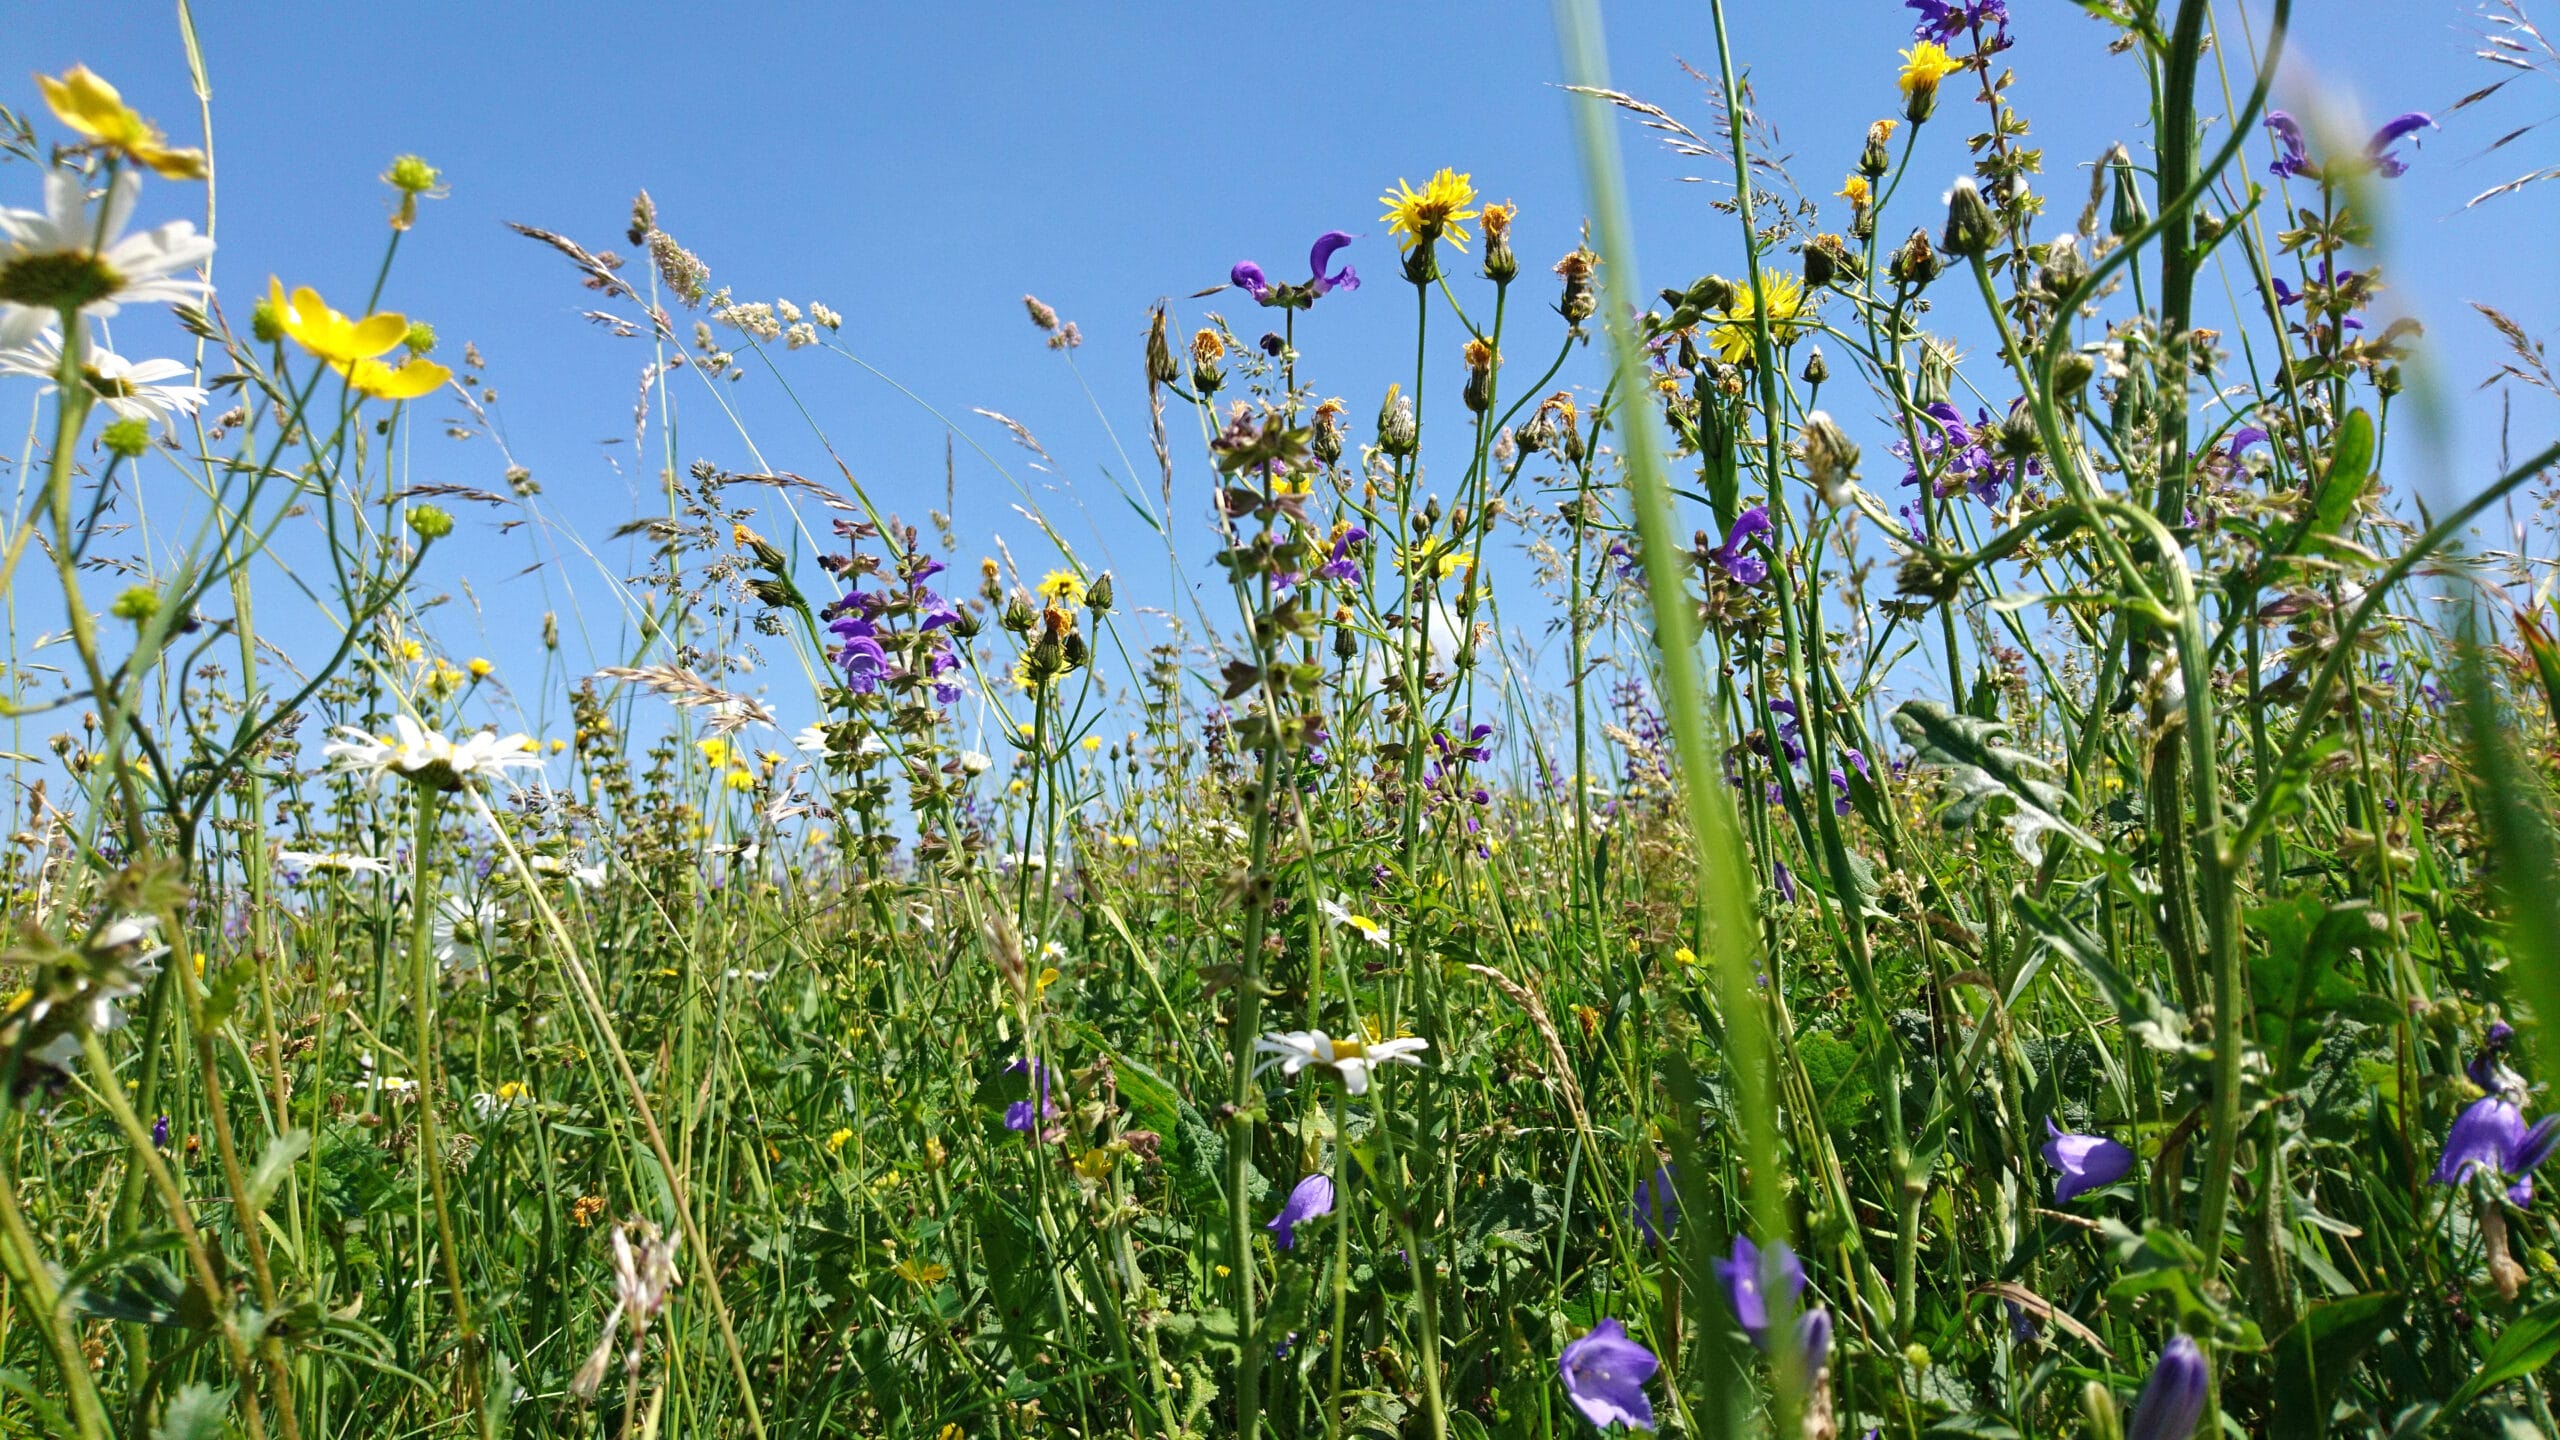 Abbildung: Das Foto zeigt unter blauem Himmel eine sommerliche Blumenwiese.